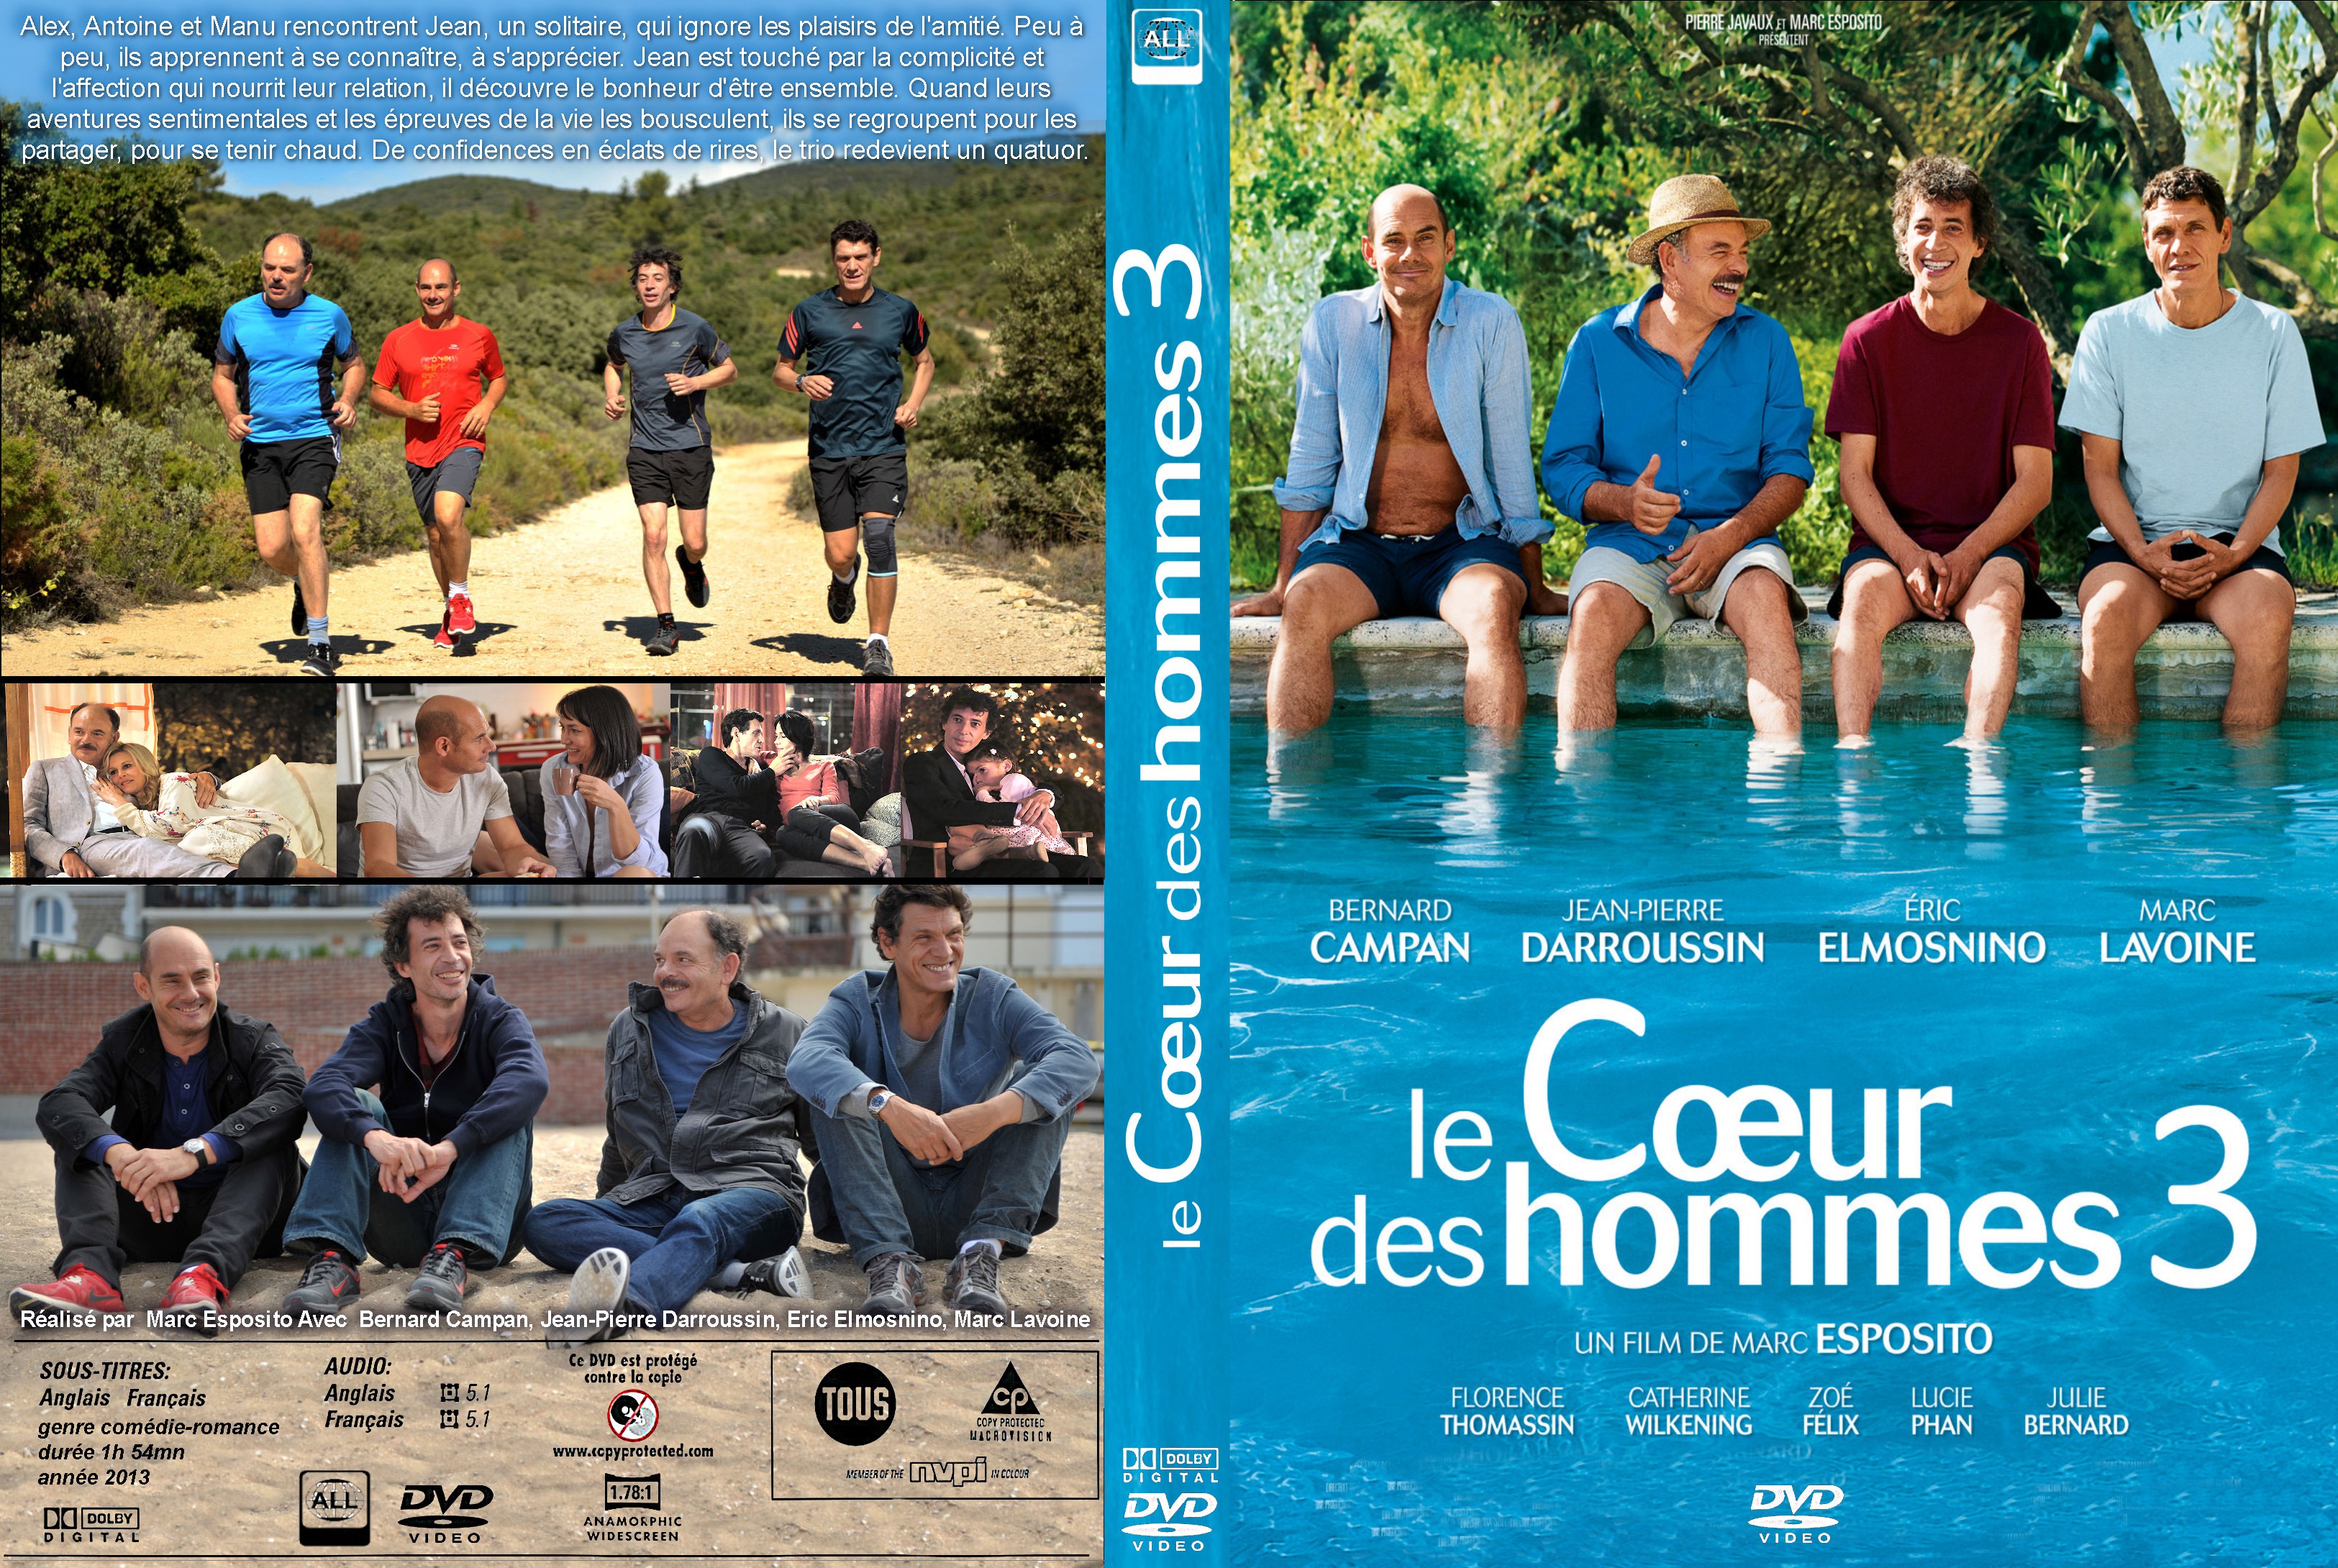 Jaquette DVD Le Coeur des hommes 3 custom